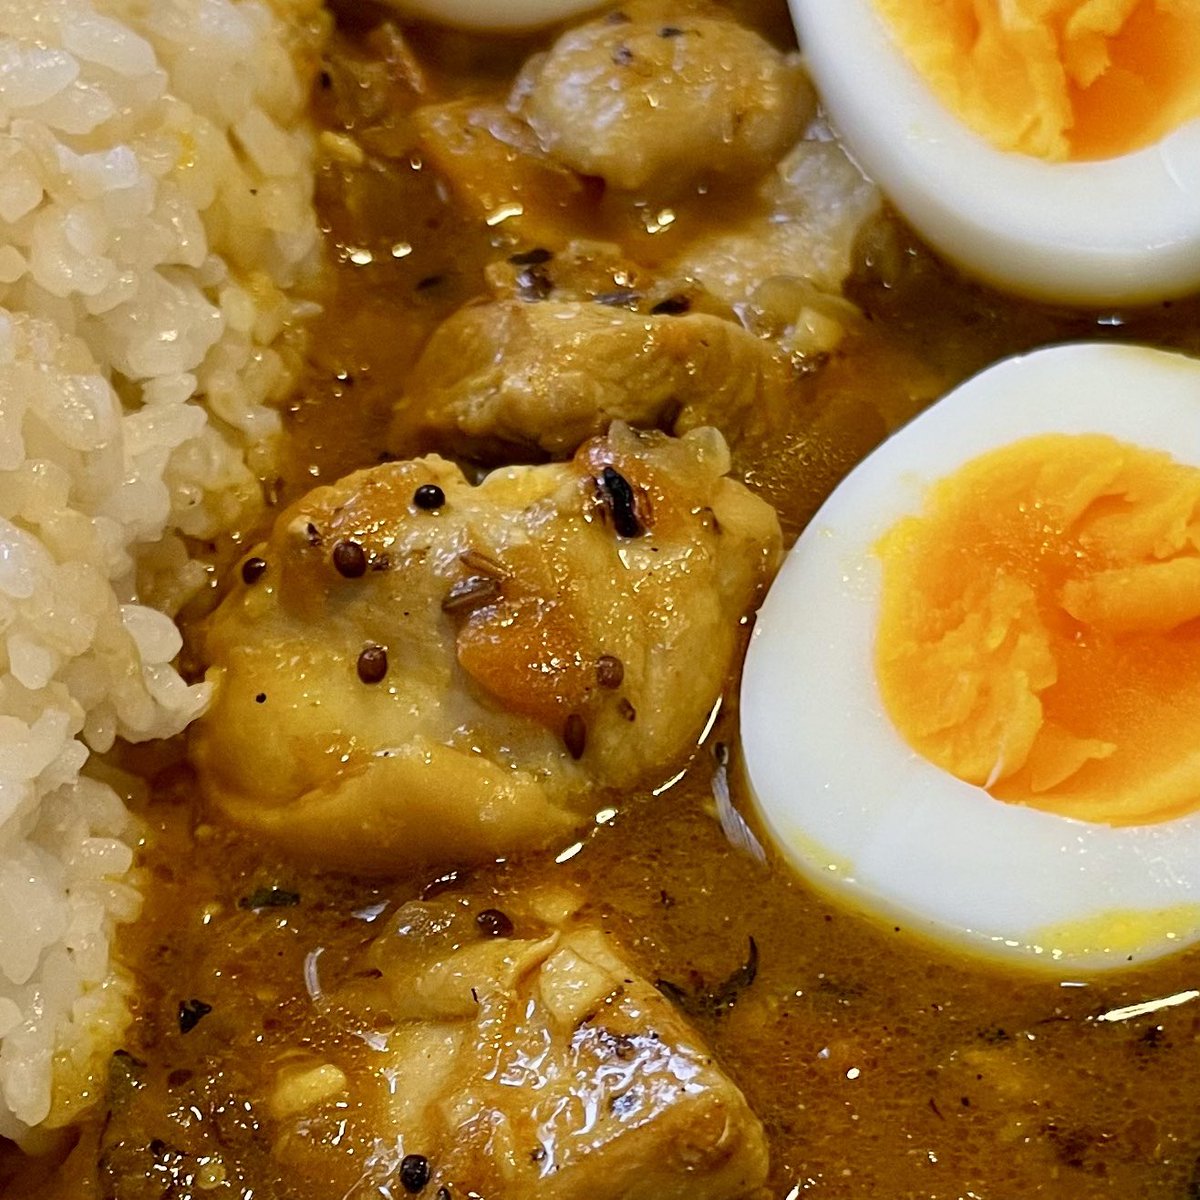 チキンカレー。ゆでたまごのせ😋
#SpiceCurry #IndianCurry #ChickenCurry #Curry #Cooking #スパイスカレー #インドカレー #チキンカレー  #カレー #料理